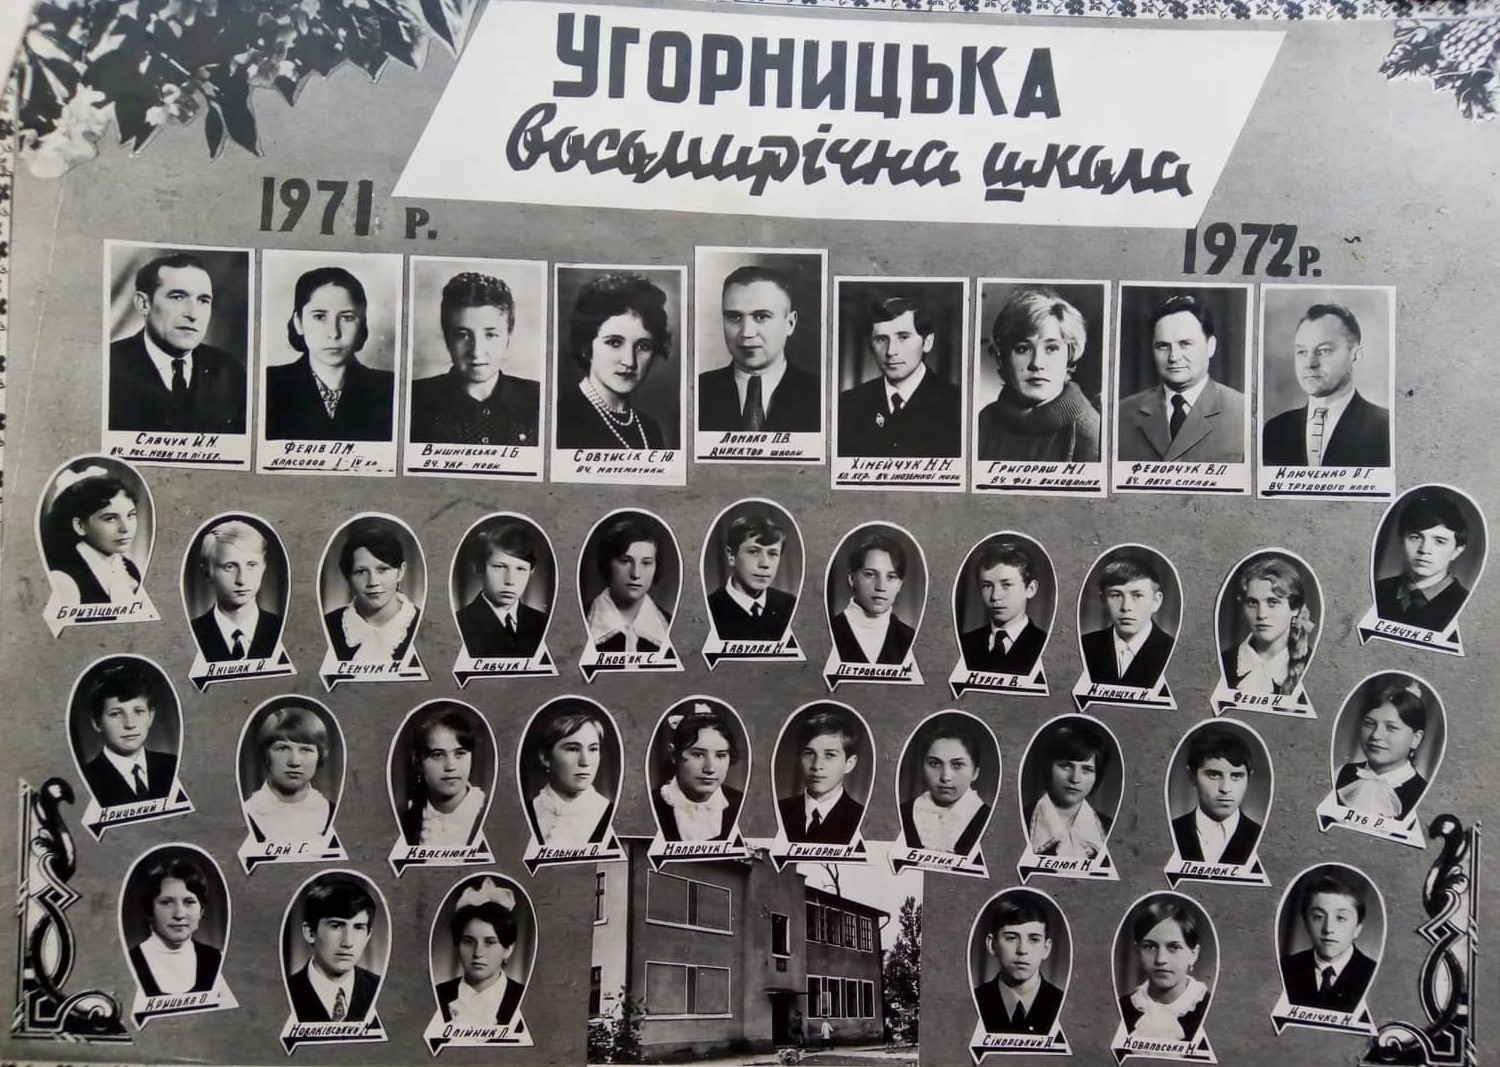 Угорники школа 1972